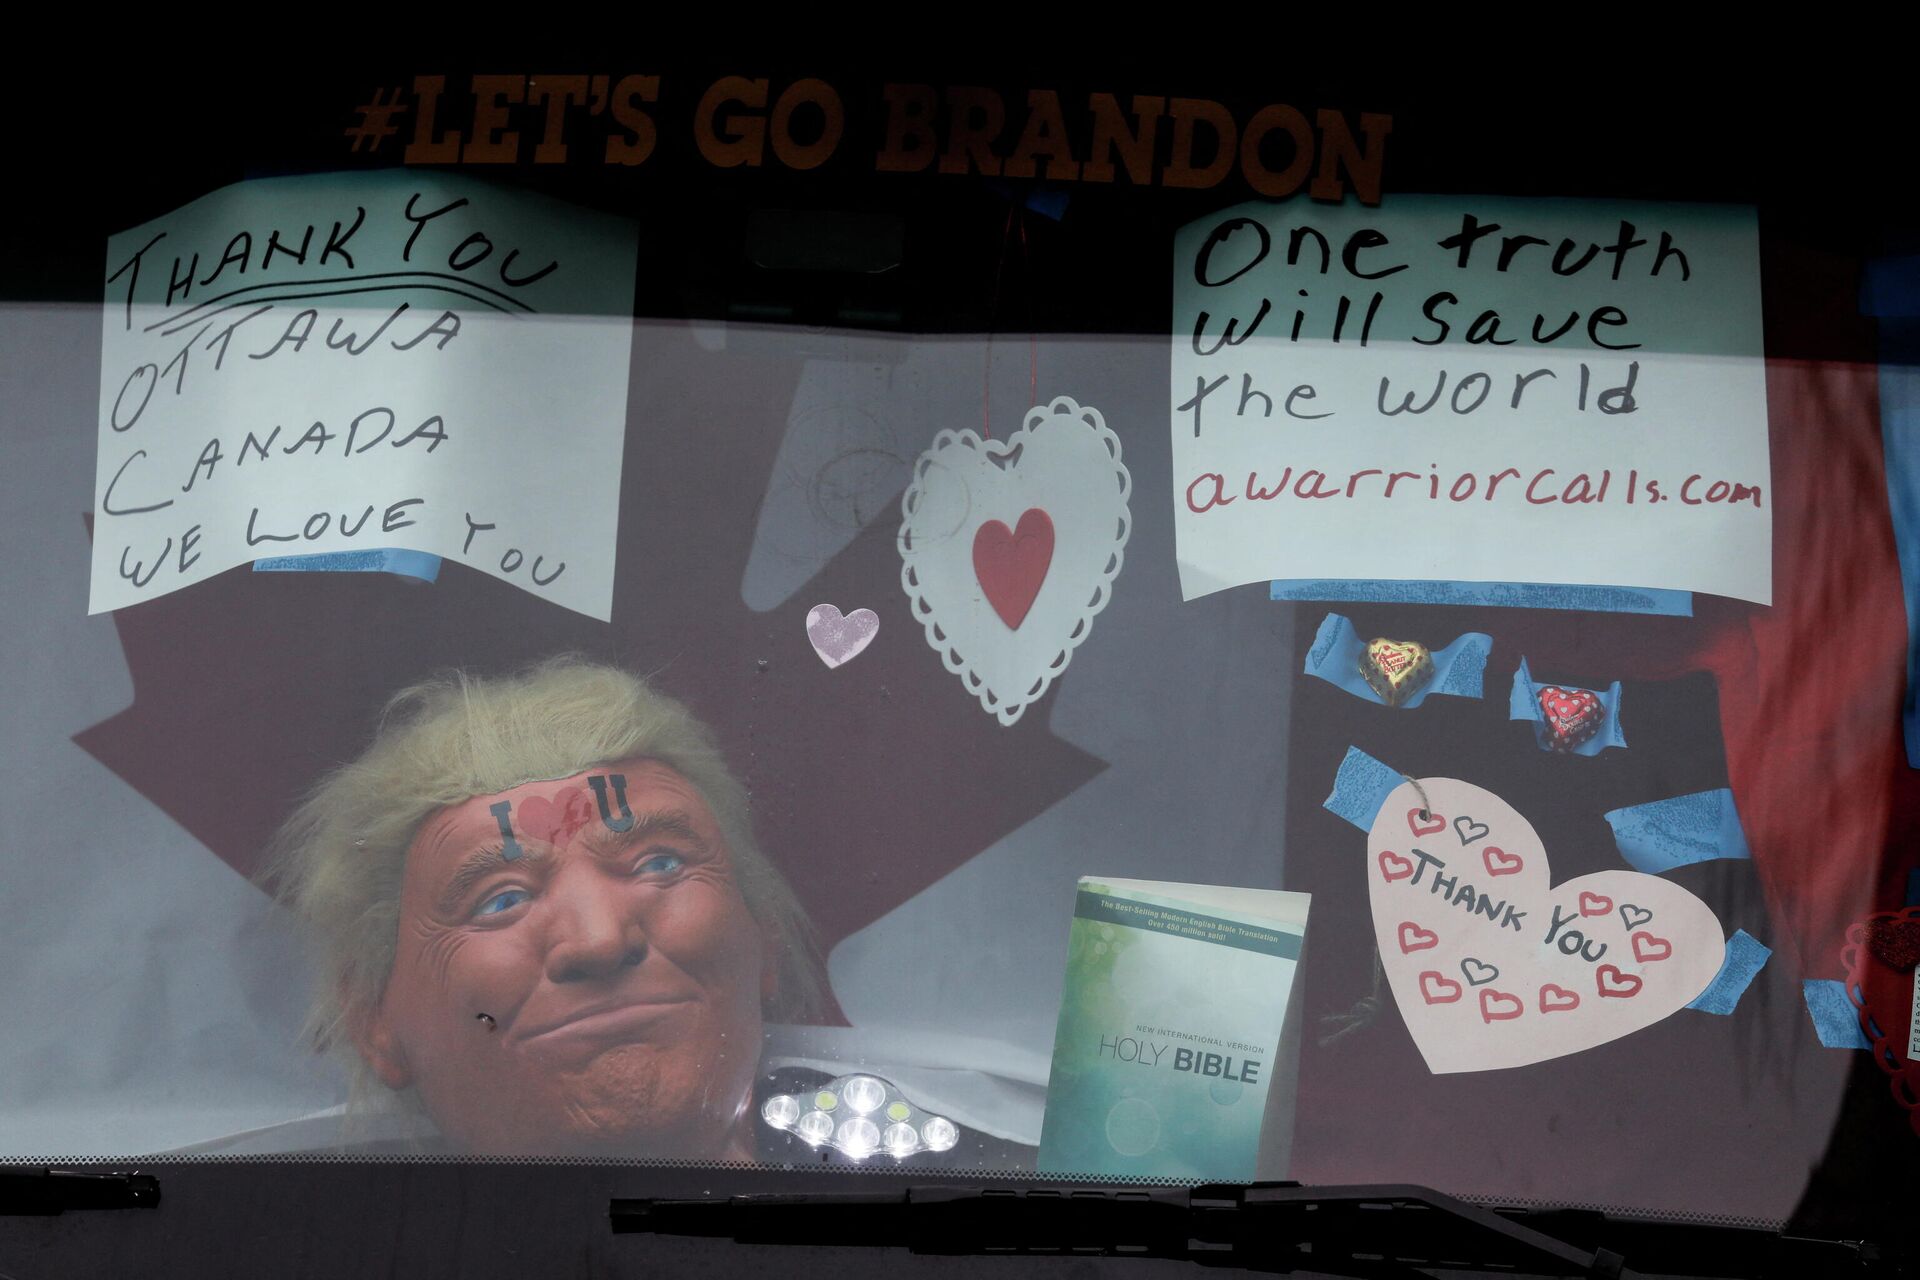 Máscara retratando Donald Trump vista no carro durante protestos em Ottawa, Canadá, 16 de fevereiro de 2022 - Sputnik Brasil, 1920, 21.02.2022